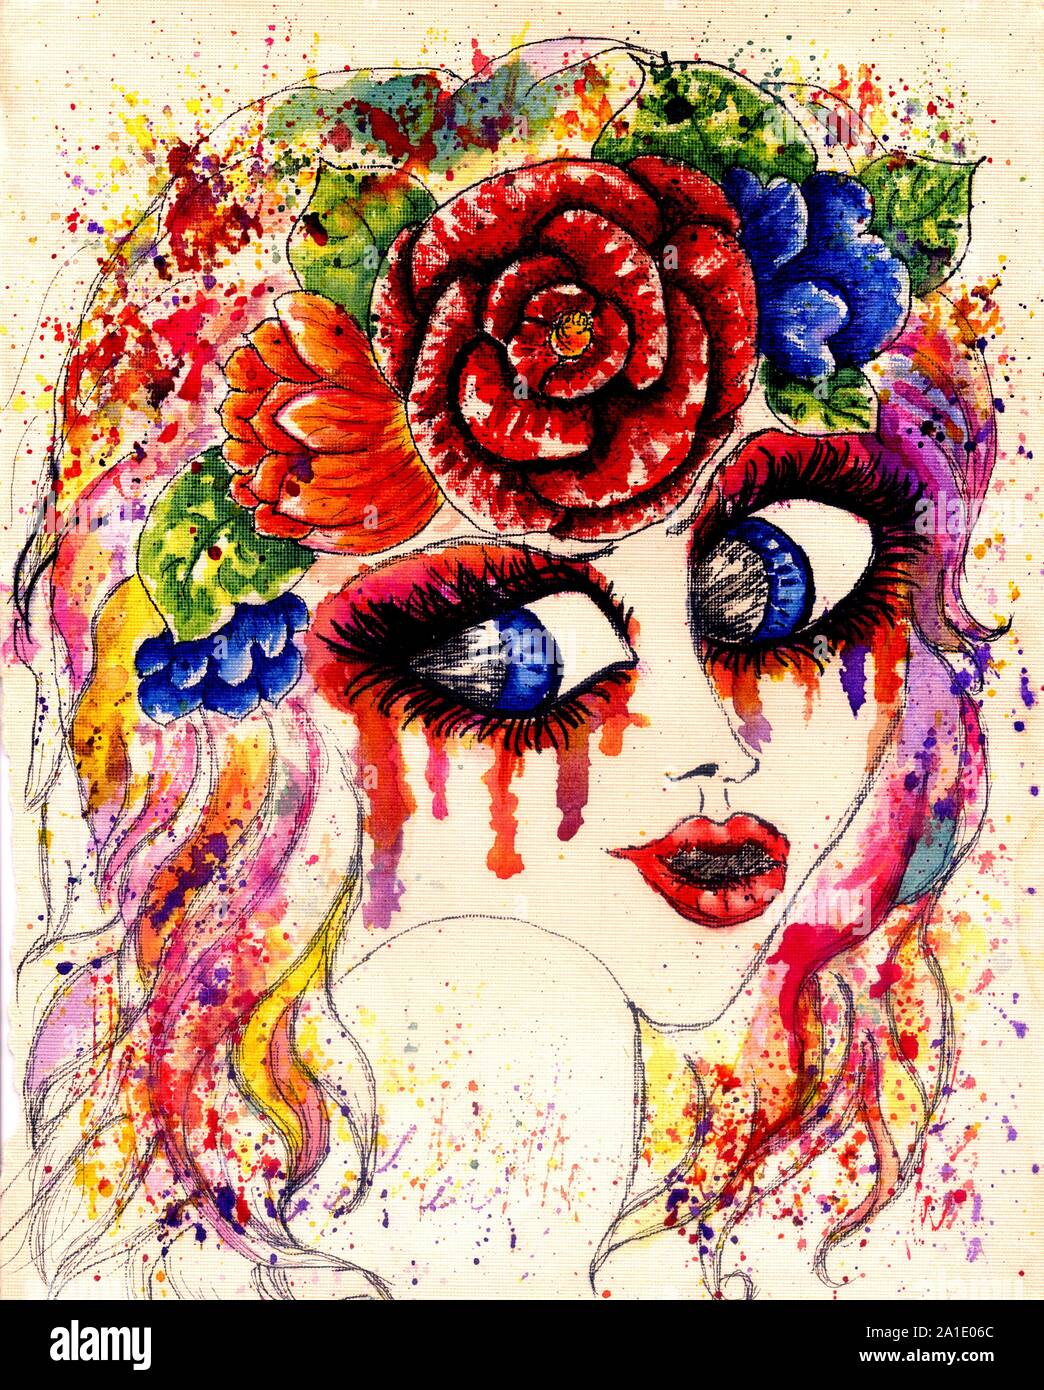 πίδακας Λουλούδι της πόλης Αναστέλλω girl with flower crown painting στήθος  Λεπτομερής αλεξίπτωτο